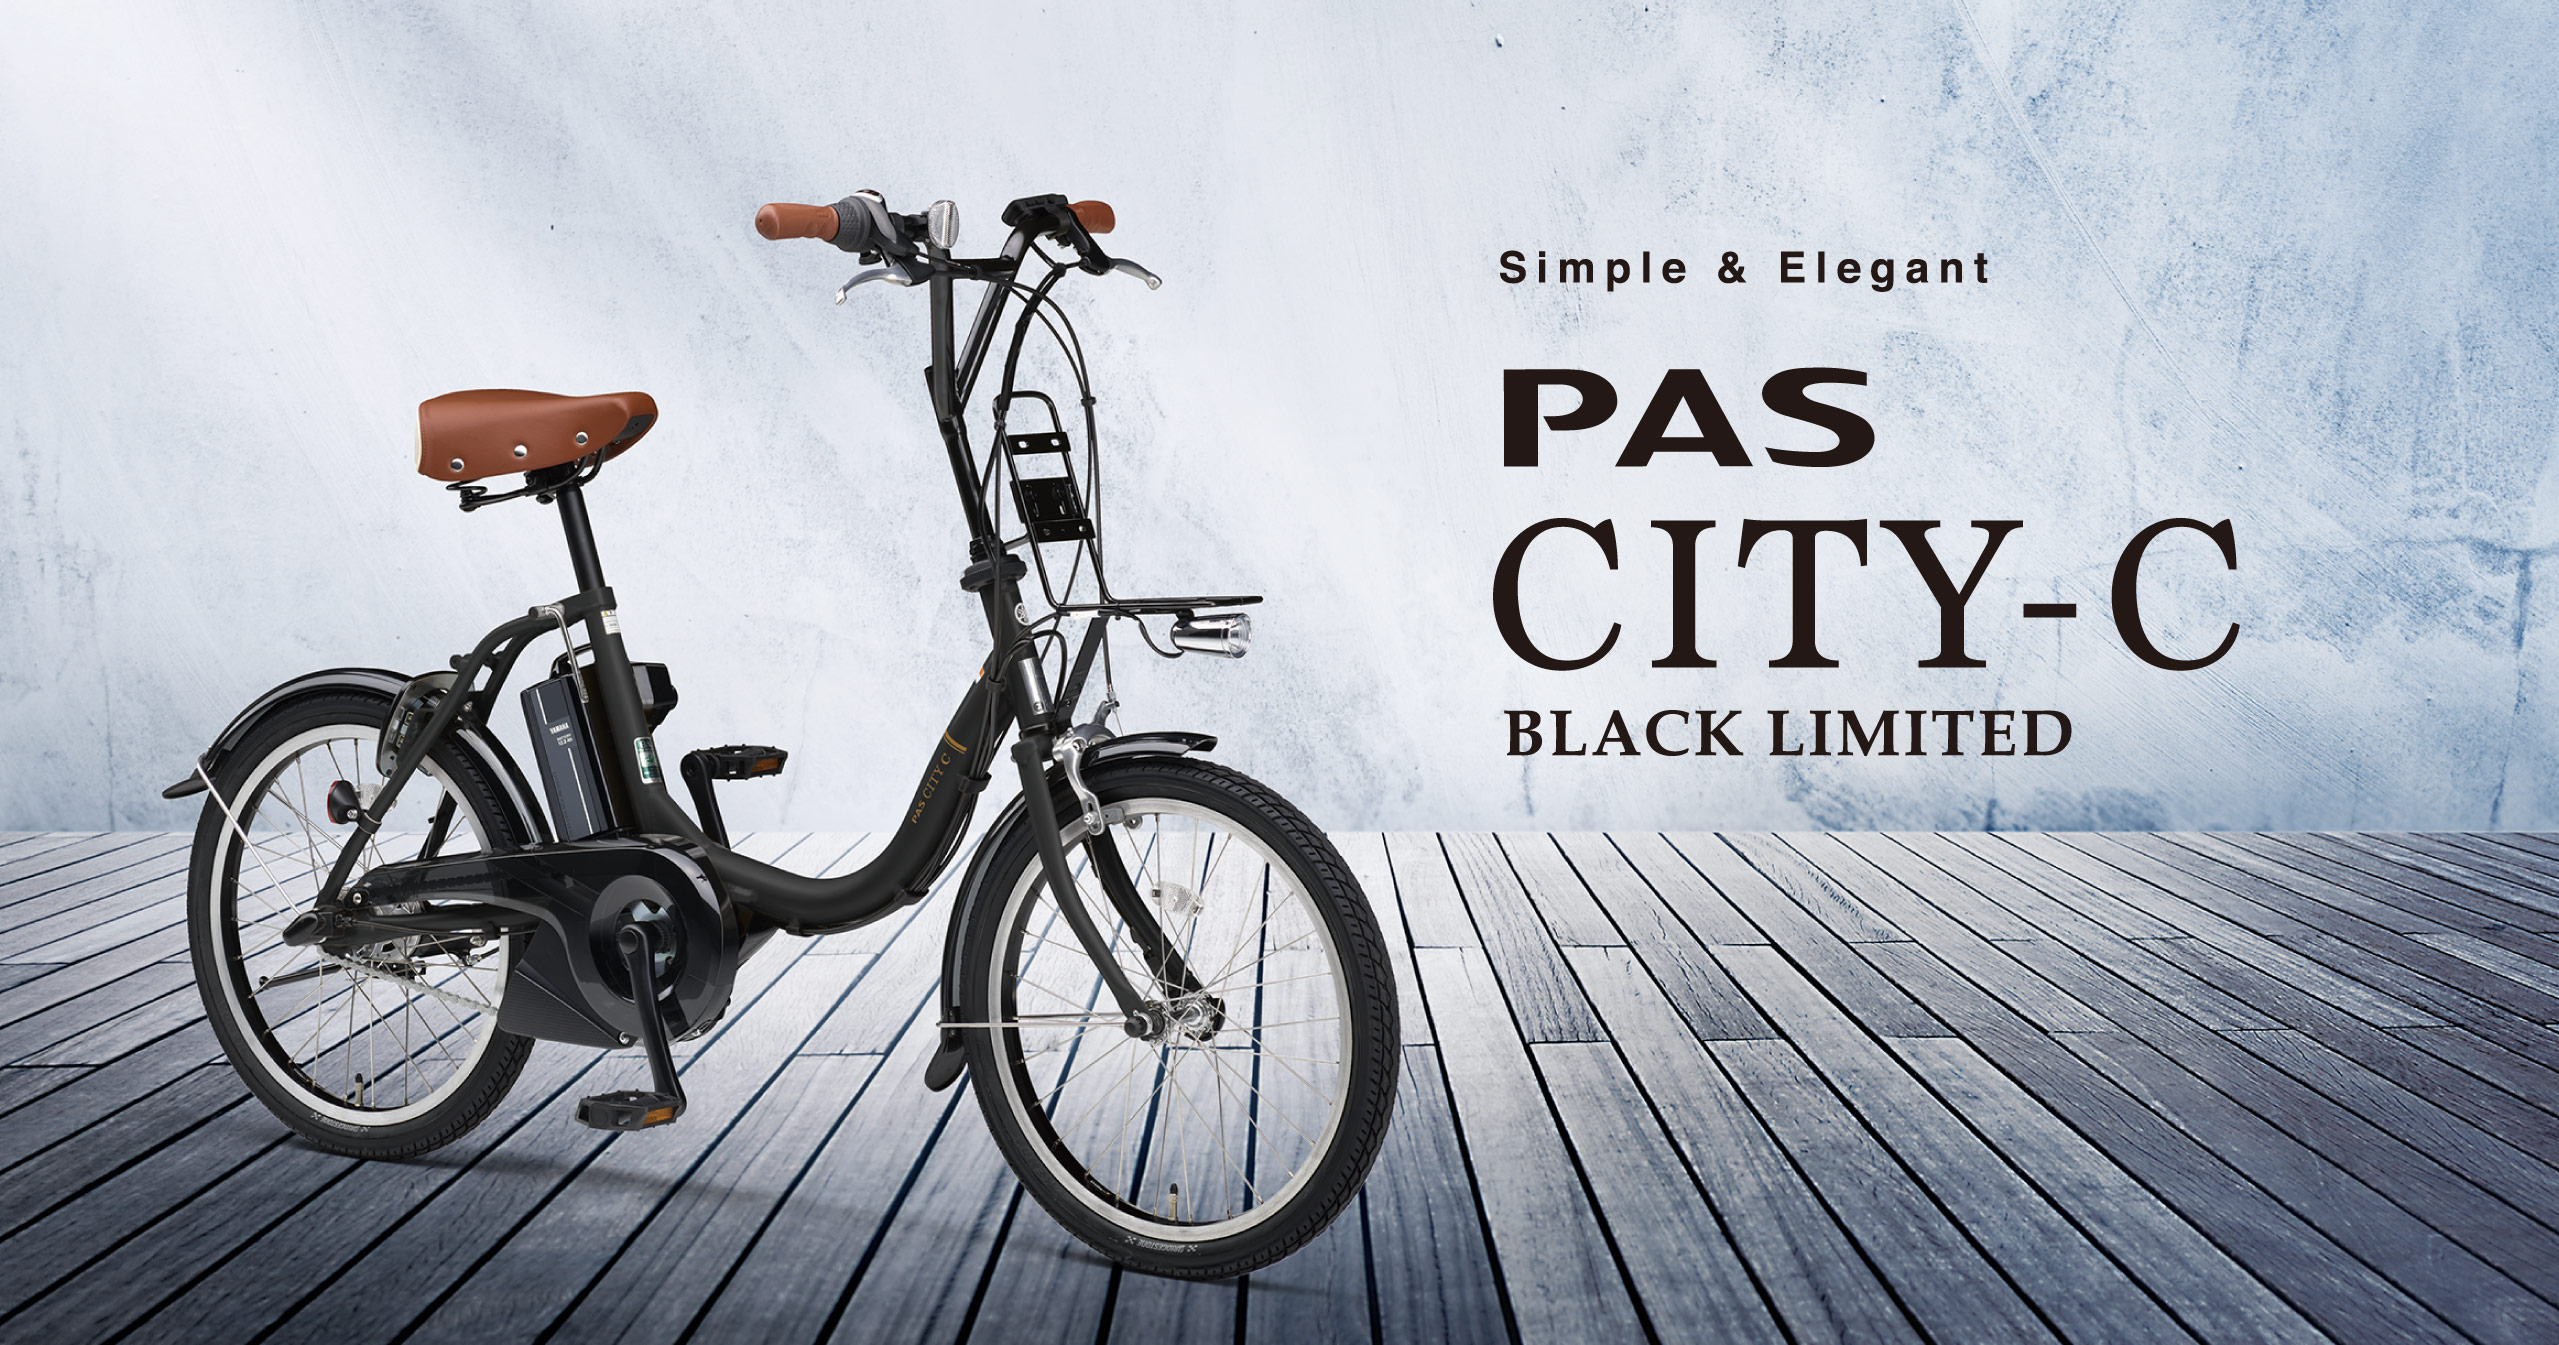 PAS CITY-C BLACK LIMITED - 電動自転車 | ヤマハ発動機